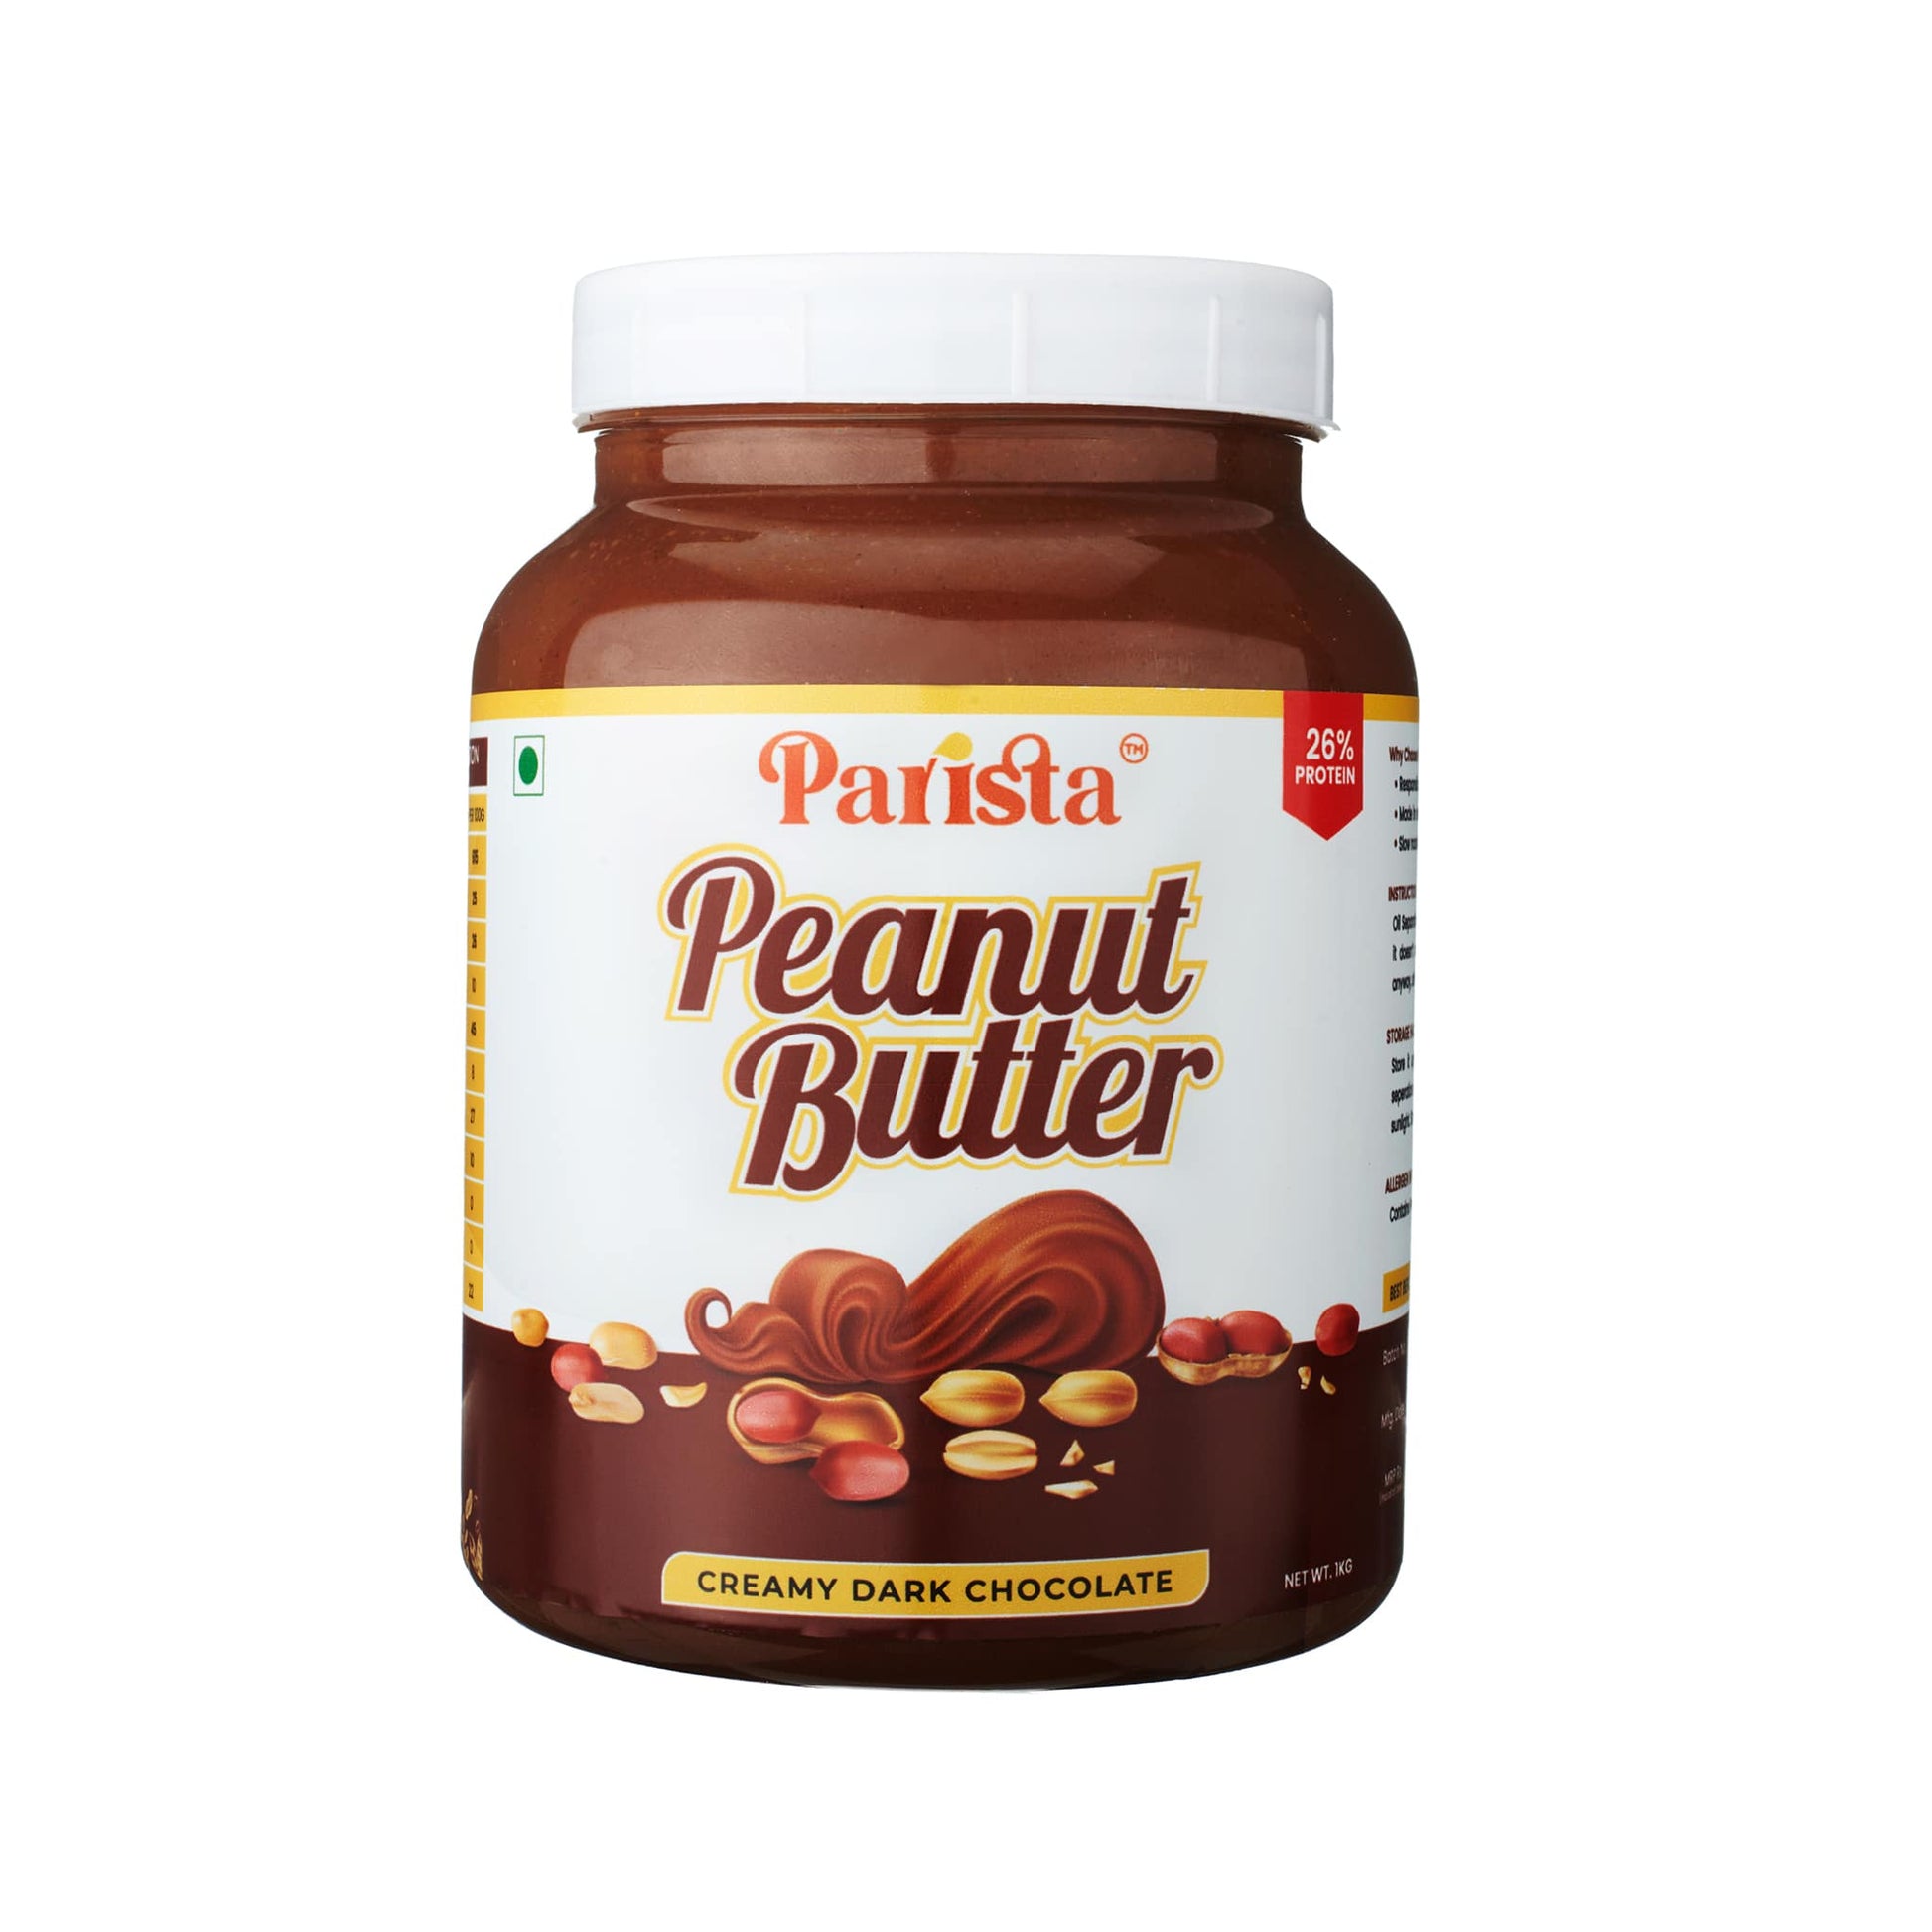 Creamy Dark Chocolate Peanut Butter – Parista Peanut Butter